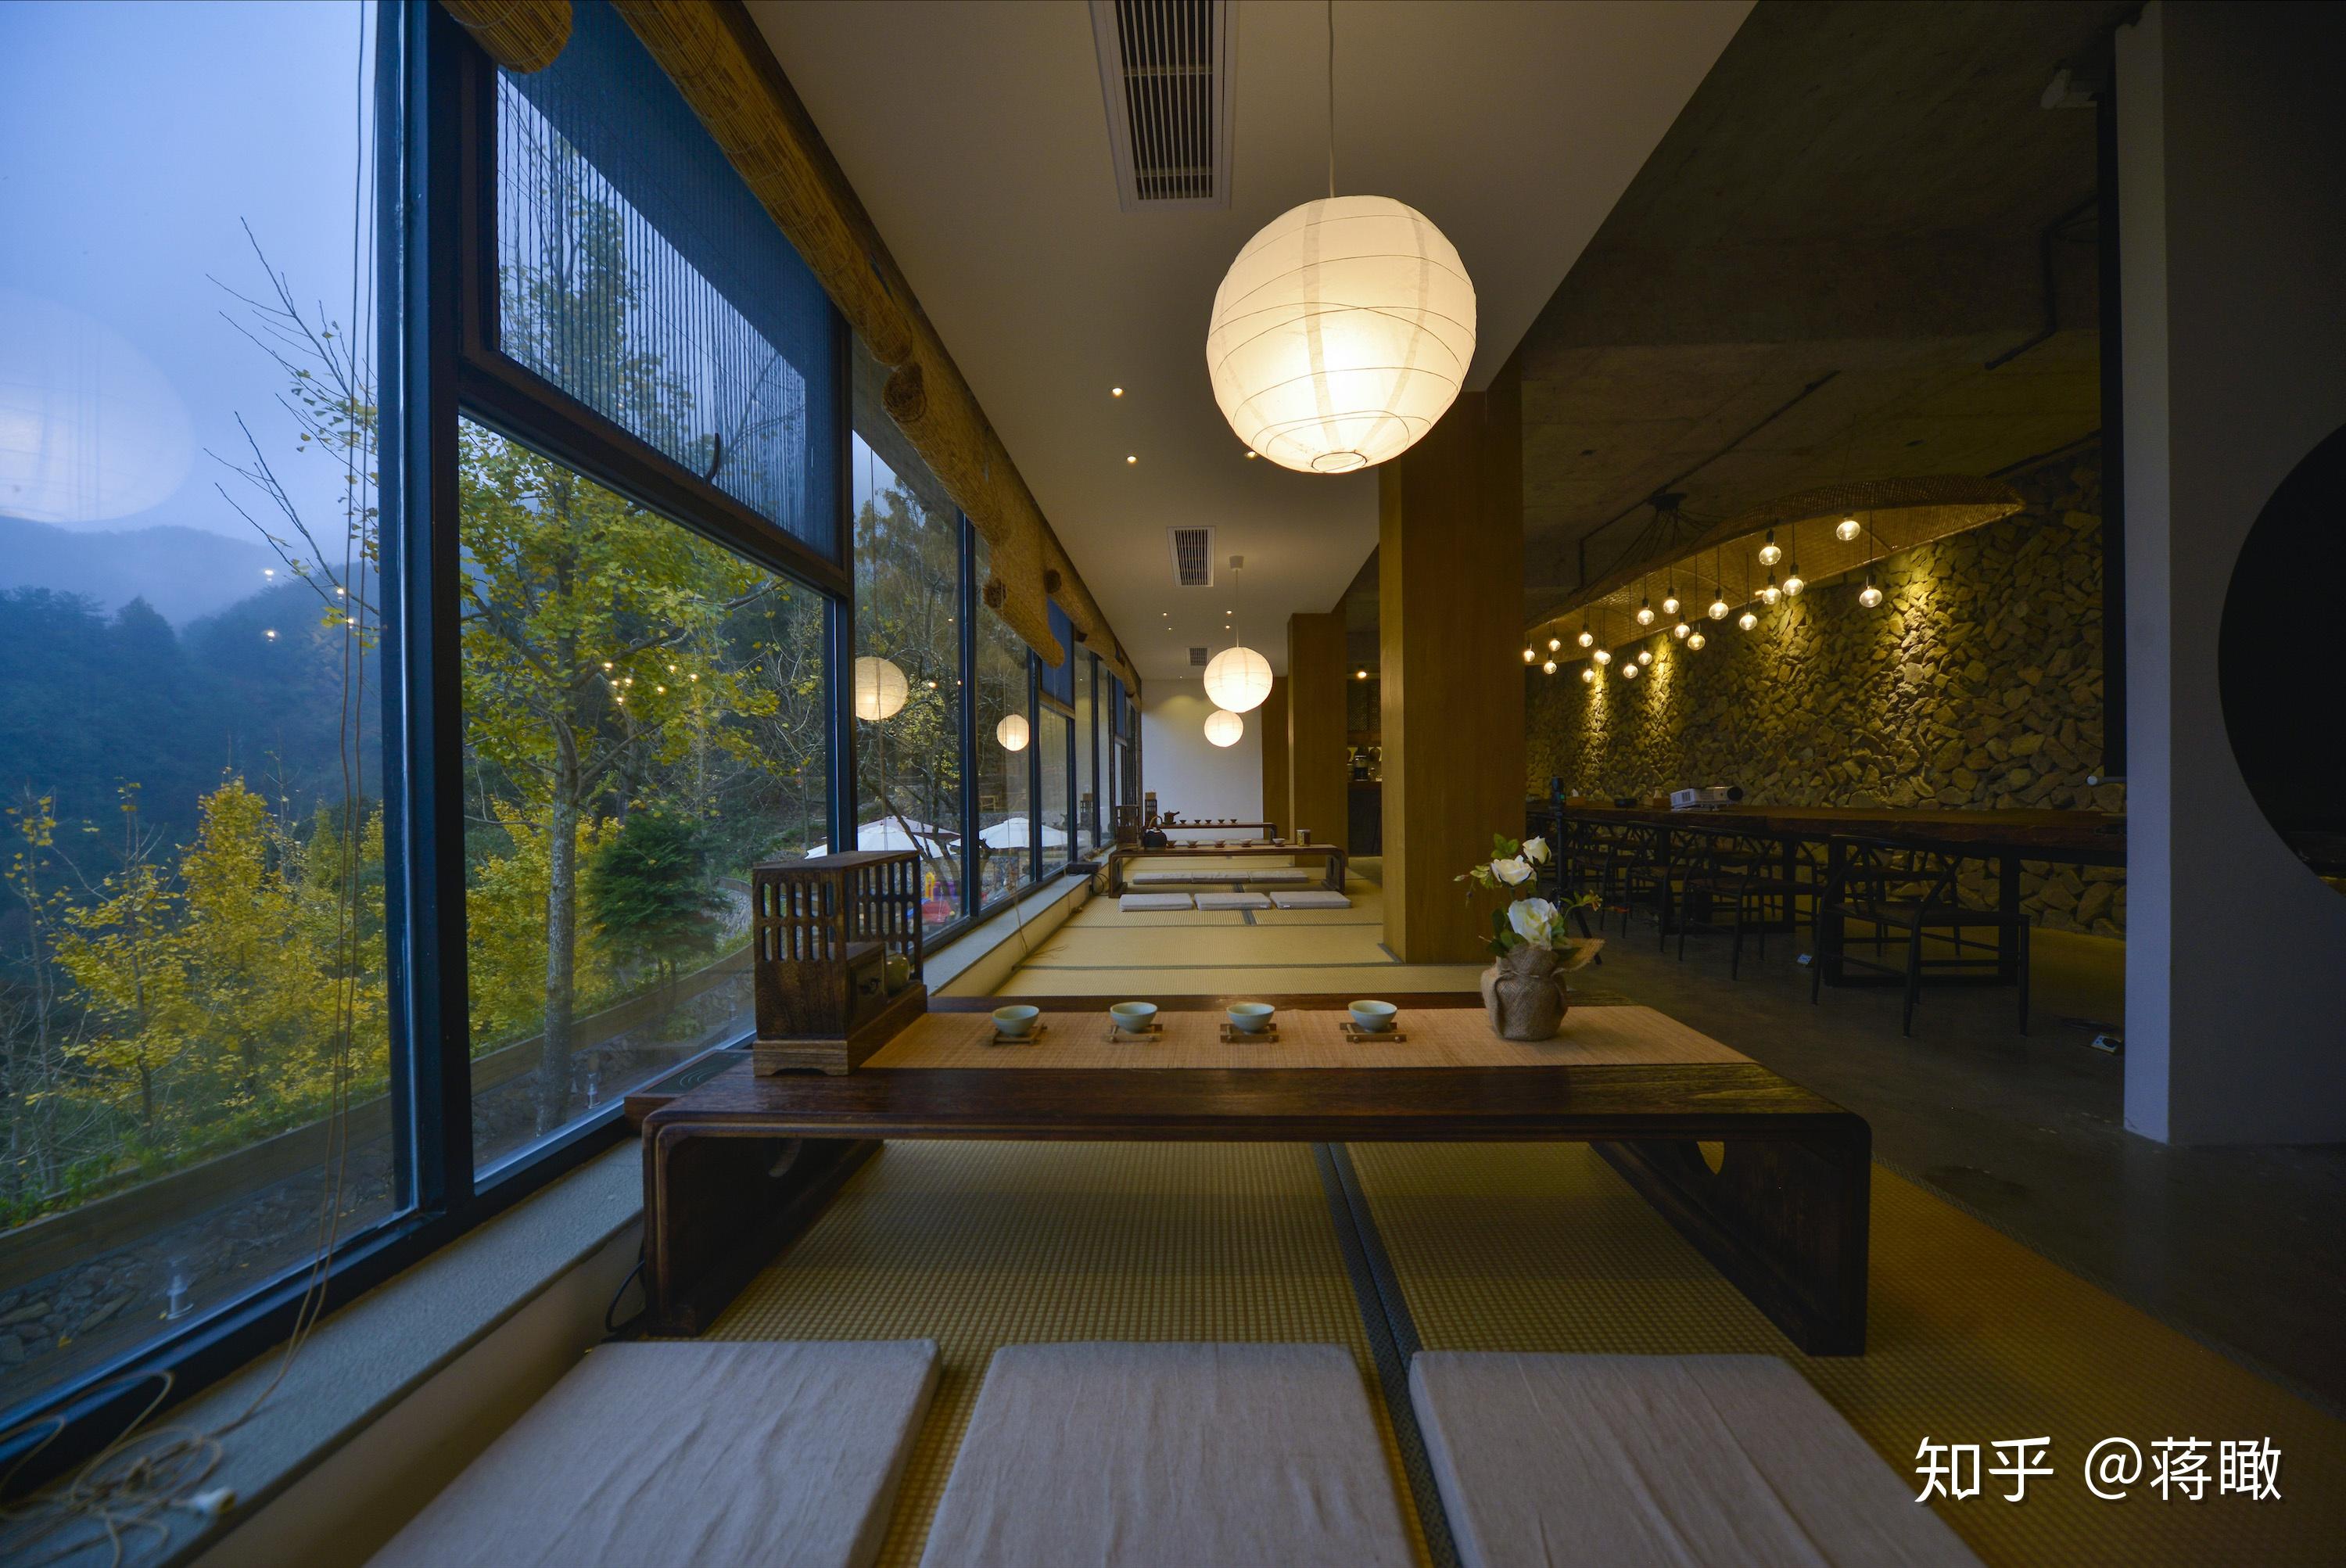 [蘇州観光] 蘇州宿泊施設のおすすめリスト，人気のある21の宿泊施設 - Y&J ワールドツアー